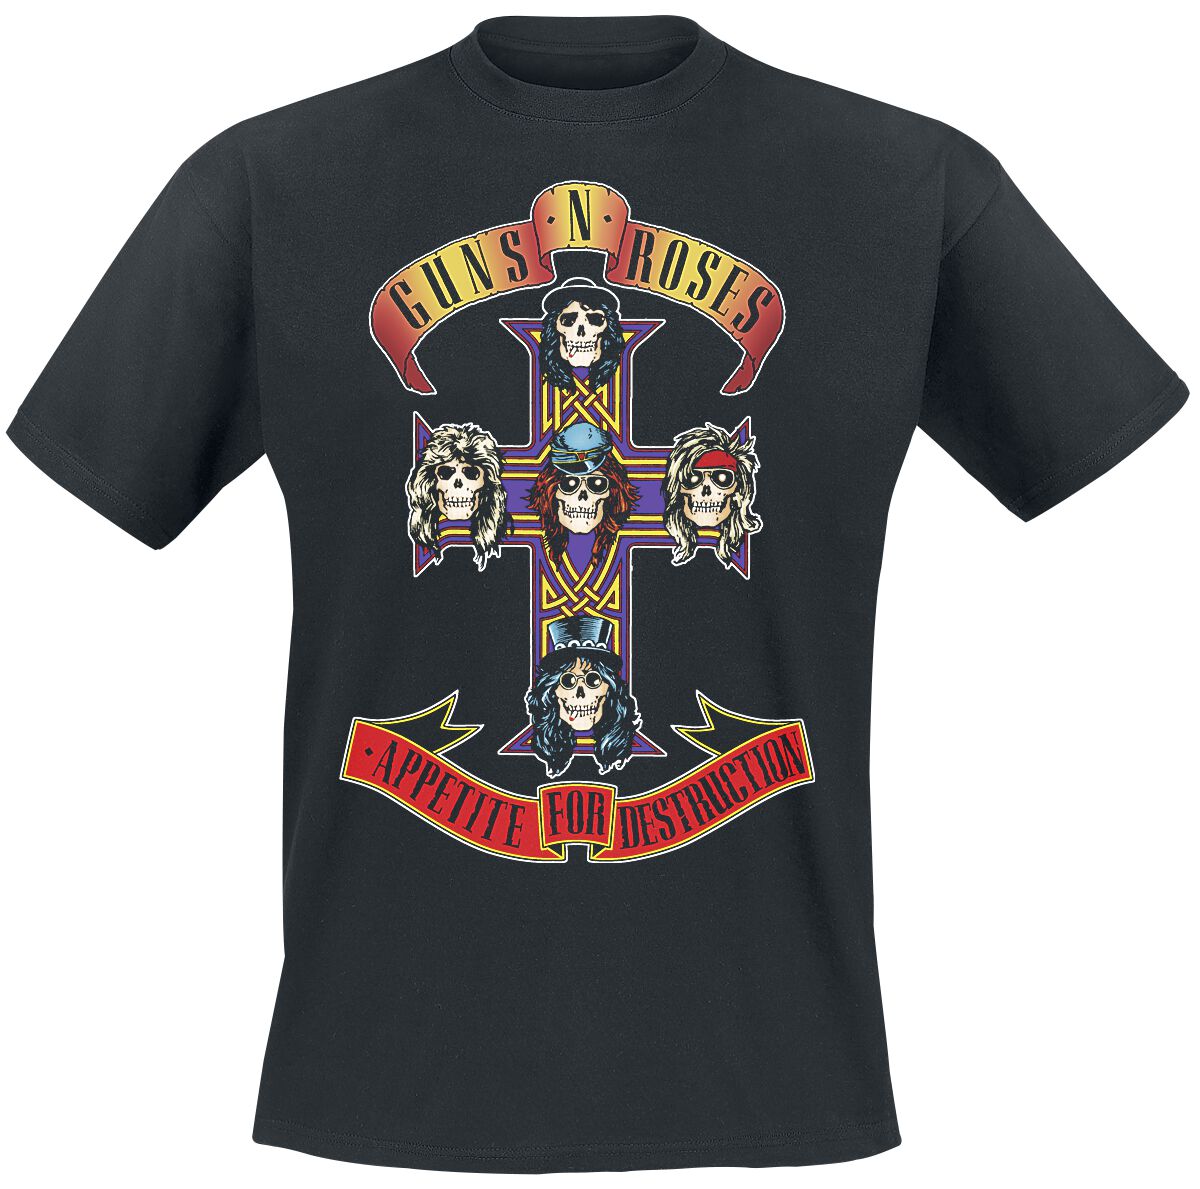 Guns N' Roses T-Shirt - Appetite For Destruction - Cover - S bis 4XL - für Männer - Größe 3XL - schwarz  - Lizenziertes Merchandise! von Guns N' Roses